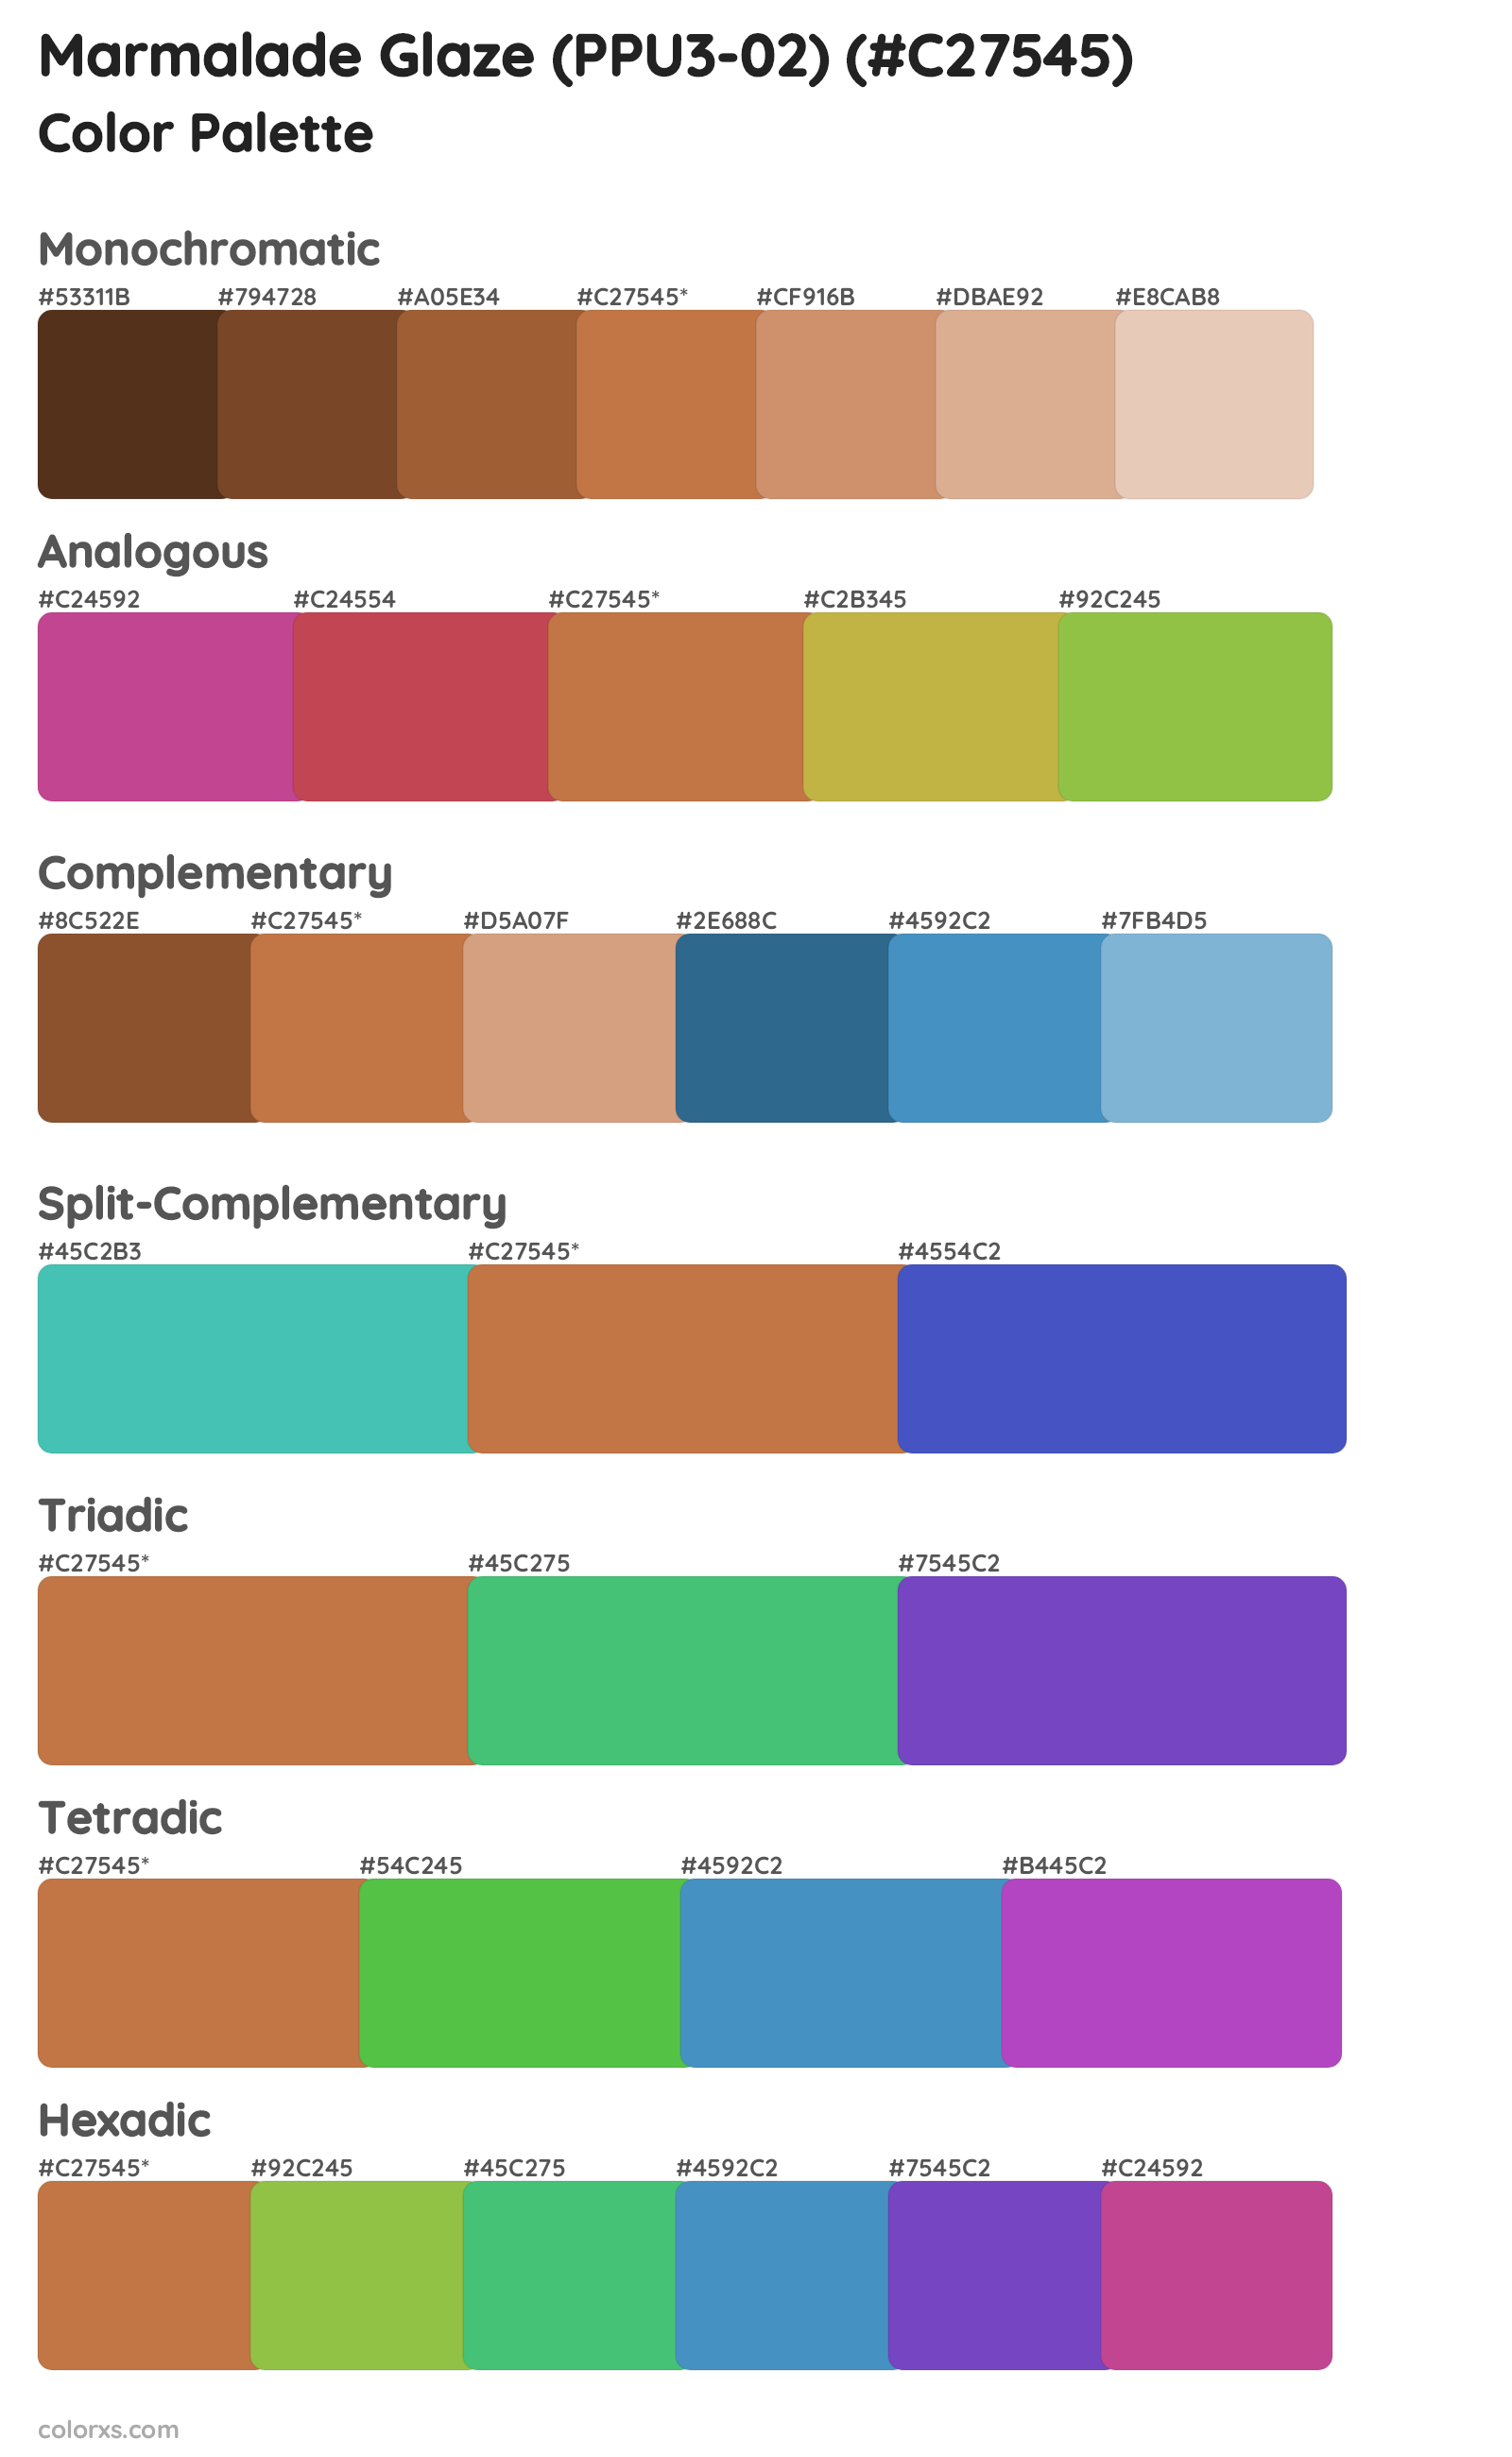 Marmalade Glaze (PPU3-02) Color Scheme Palettes